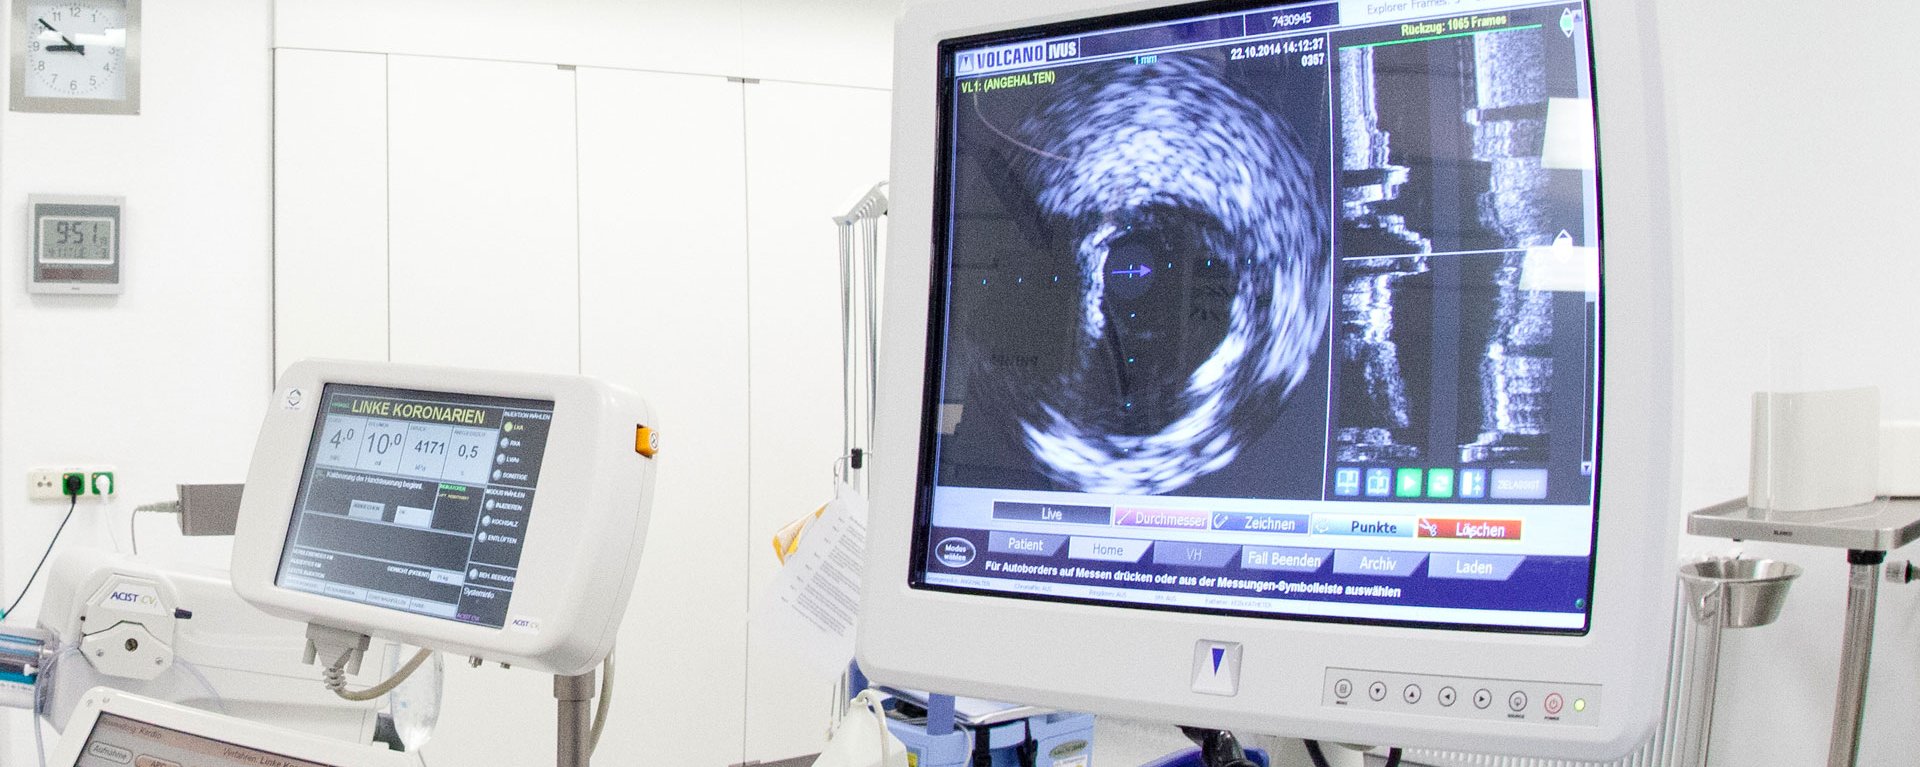 Elektrophysiologie ist ein bildgebendes Verfahren – im Bild ist ein Monitor innerhalb eines Operationssaals zu sehen, der solche Bilder ausgeben kann